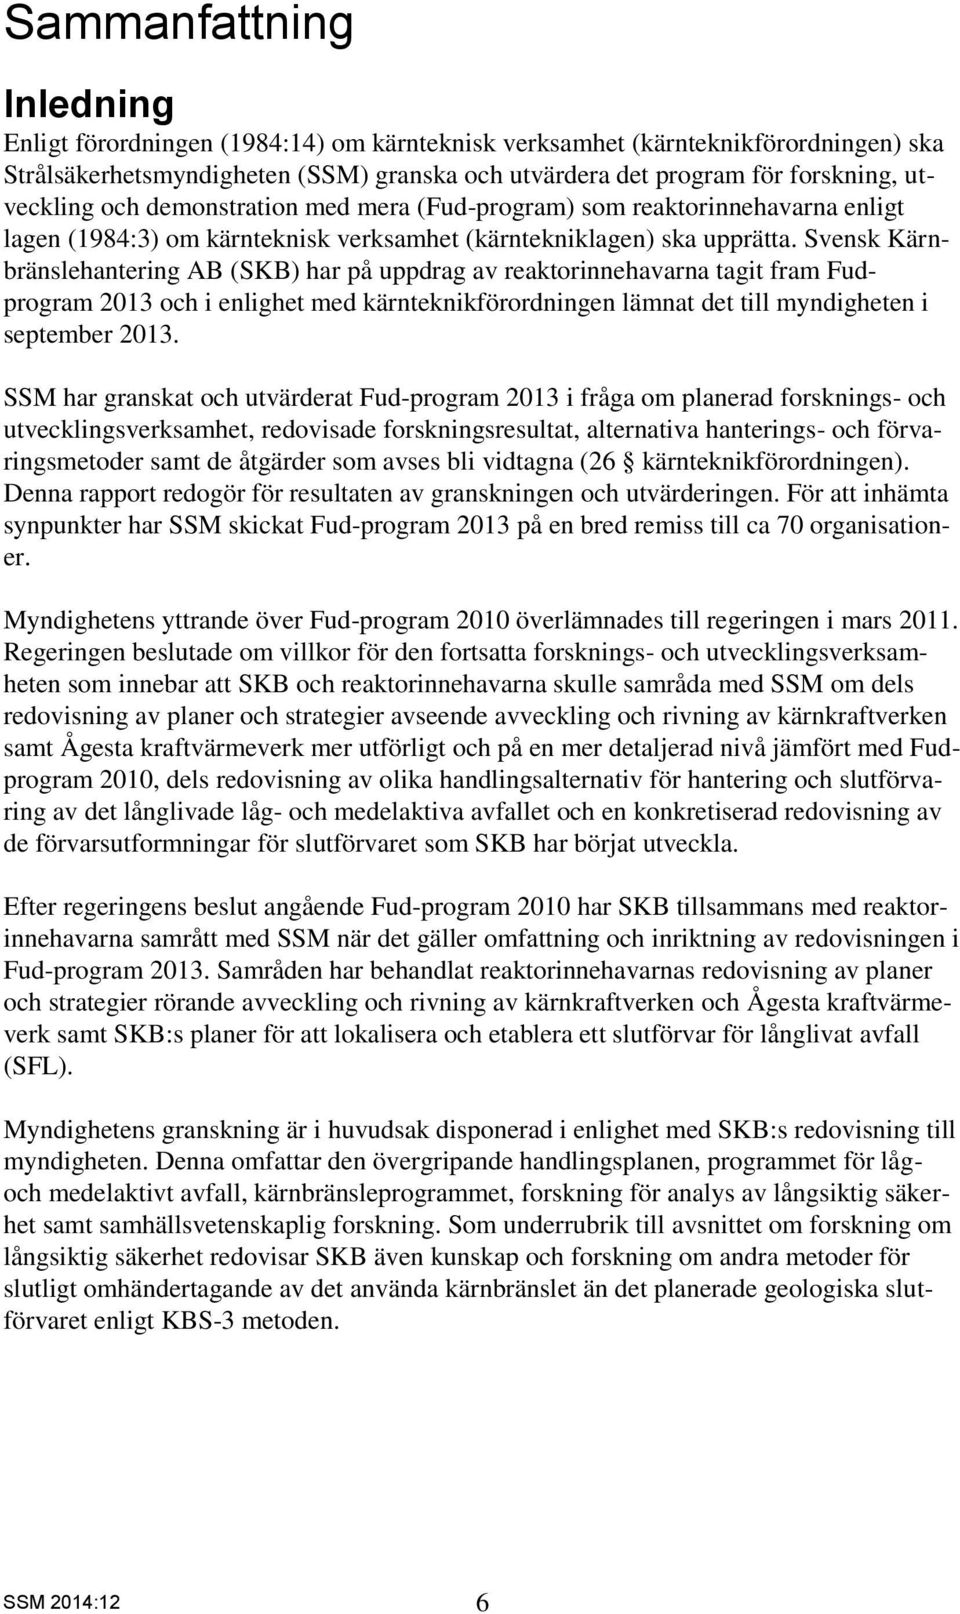 Svensk Kärnbränslehantering AB (SKB) har på uppdrag av reaktorinnehavarna tagit fram Fudprogram 2013 och i enlighet med kärnteknikförordningen lämnat det till myndigheten i september 2013.